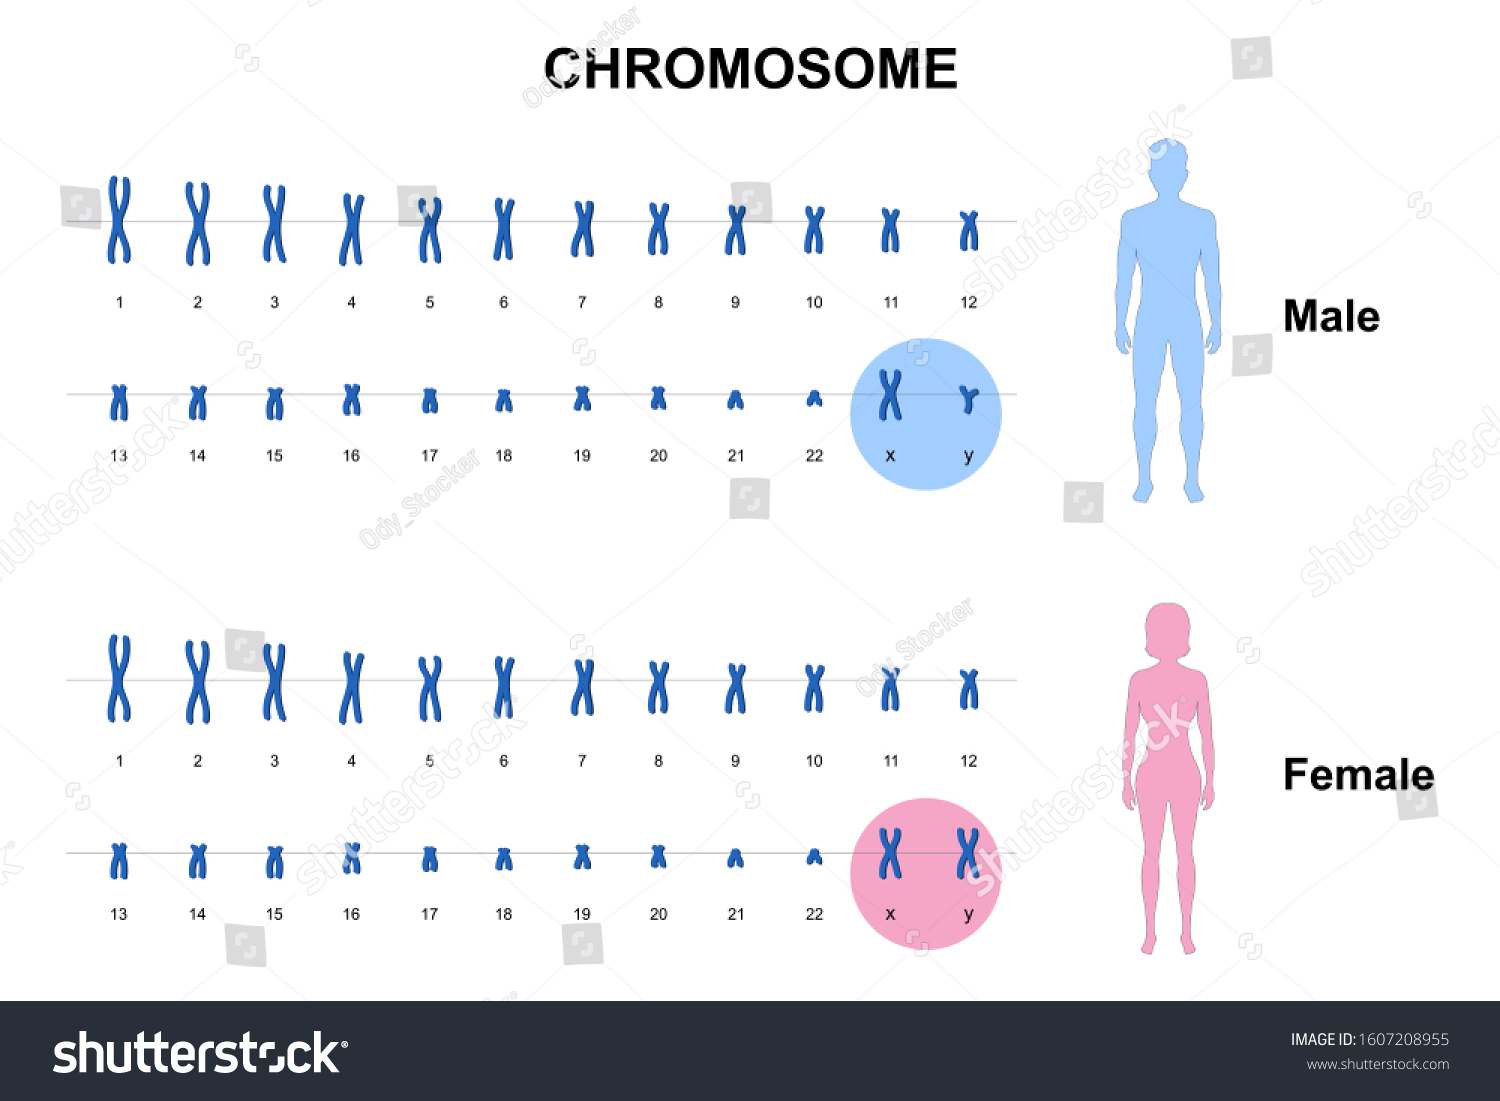 Cromosoma Autonómico Y Sexual Cariotipo Humano Vector De Stock Libre De Regalías 1607208955 